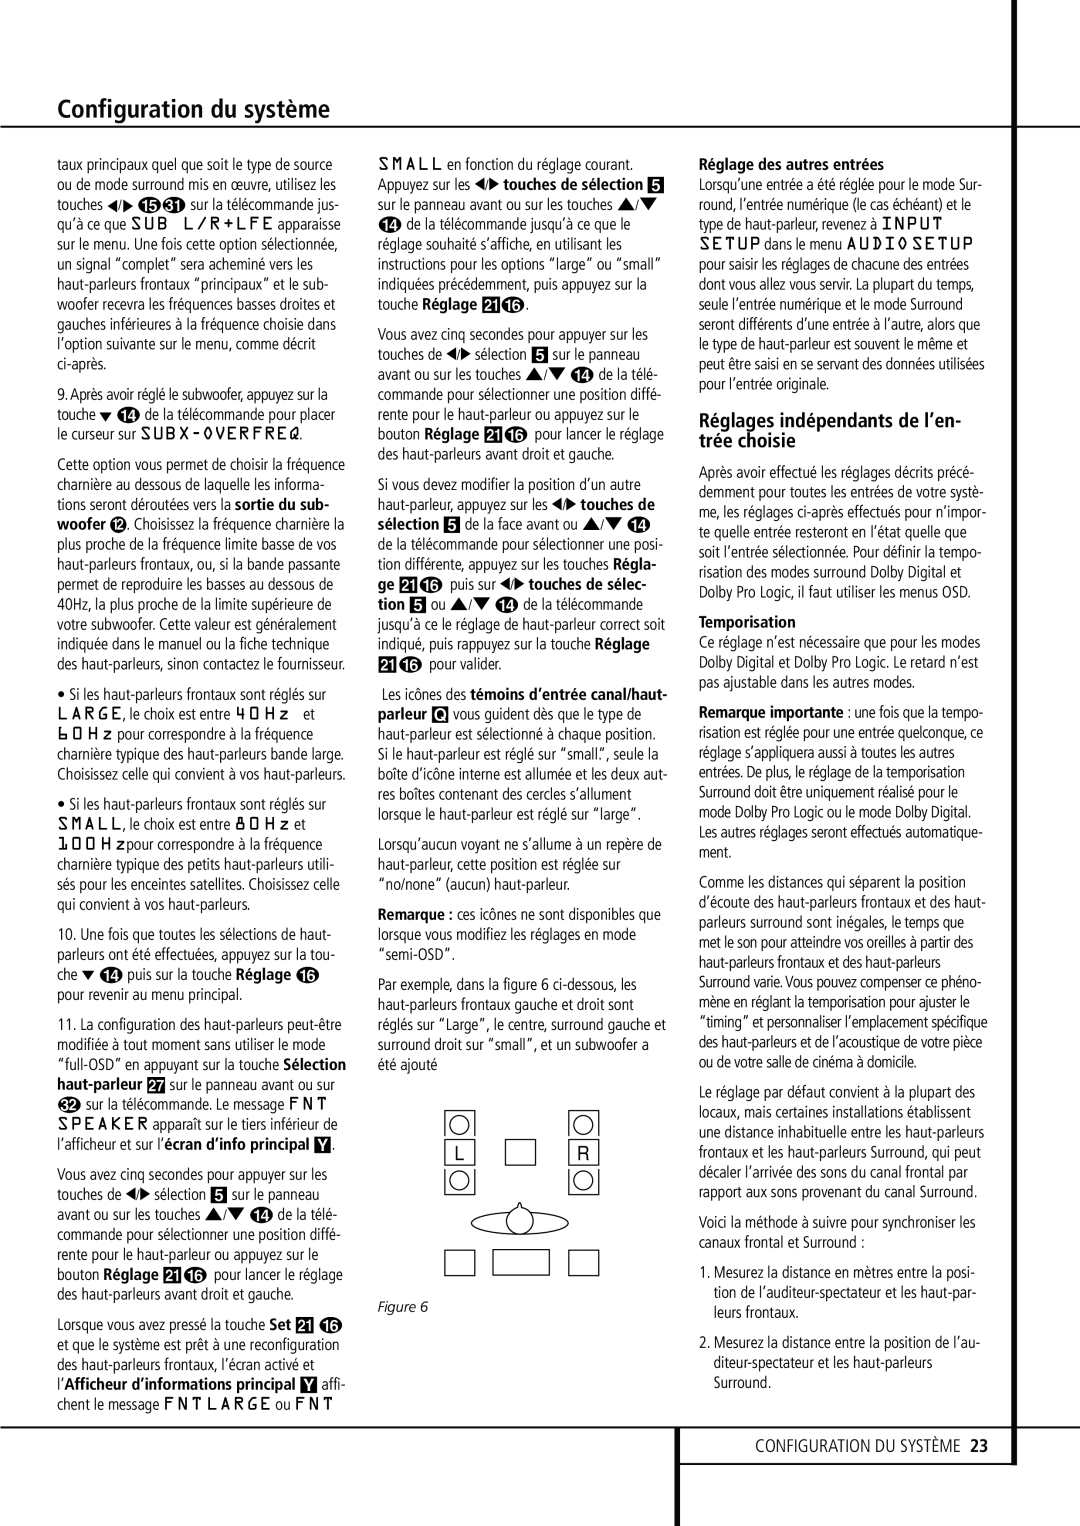 Harman-Kardon 374 manual Réglages indépendants de l’en- trée choisie, Configuration du système, Configuration Du Système 